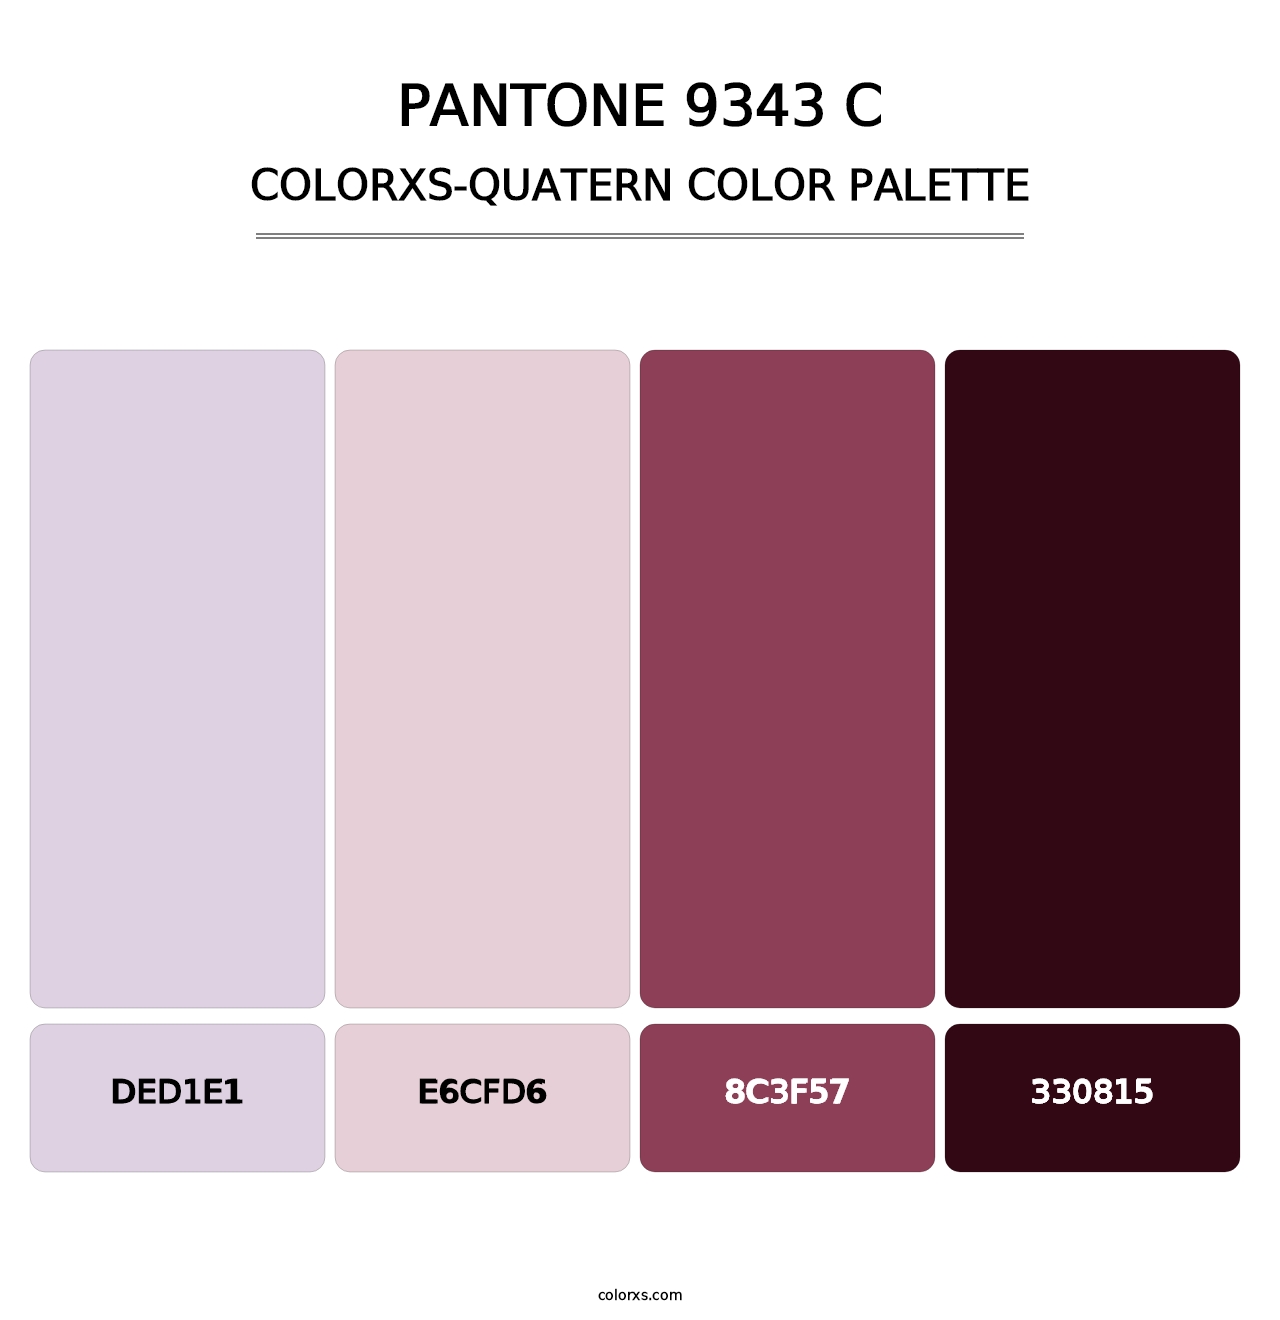 PANTONE 9343 C - Colorxs Quatern Palette